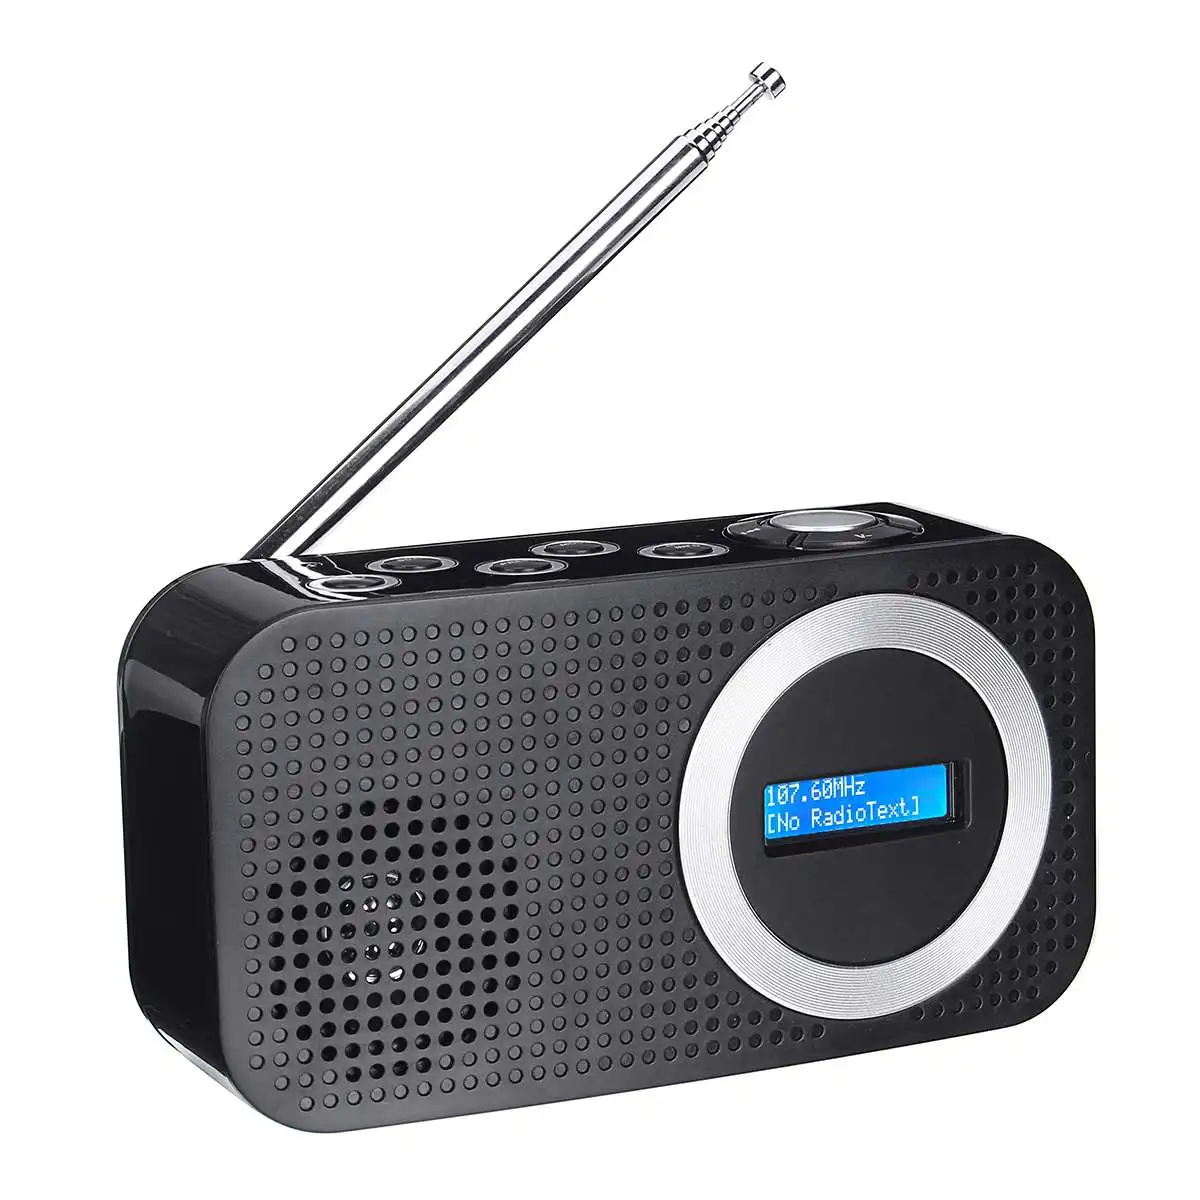 LEORY DAB цифровой fm-радио bluetooth динамик 3,5 мм AUX Jack жк-дисплей динамик в черном или белом цвете - Цвет: Black